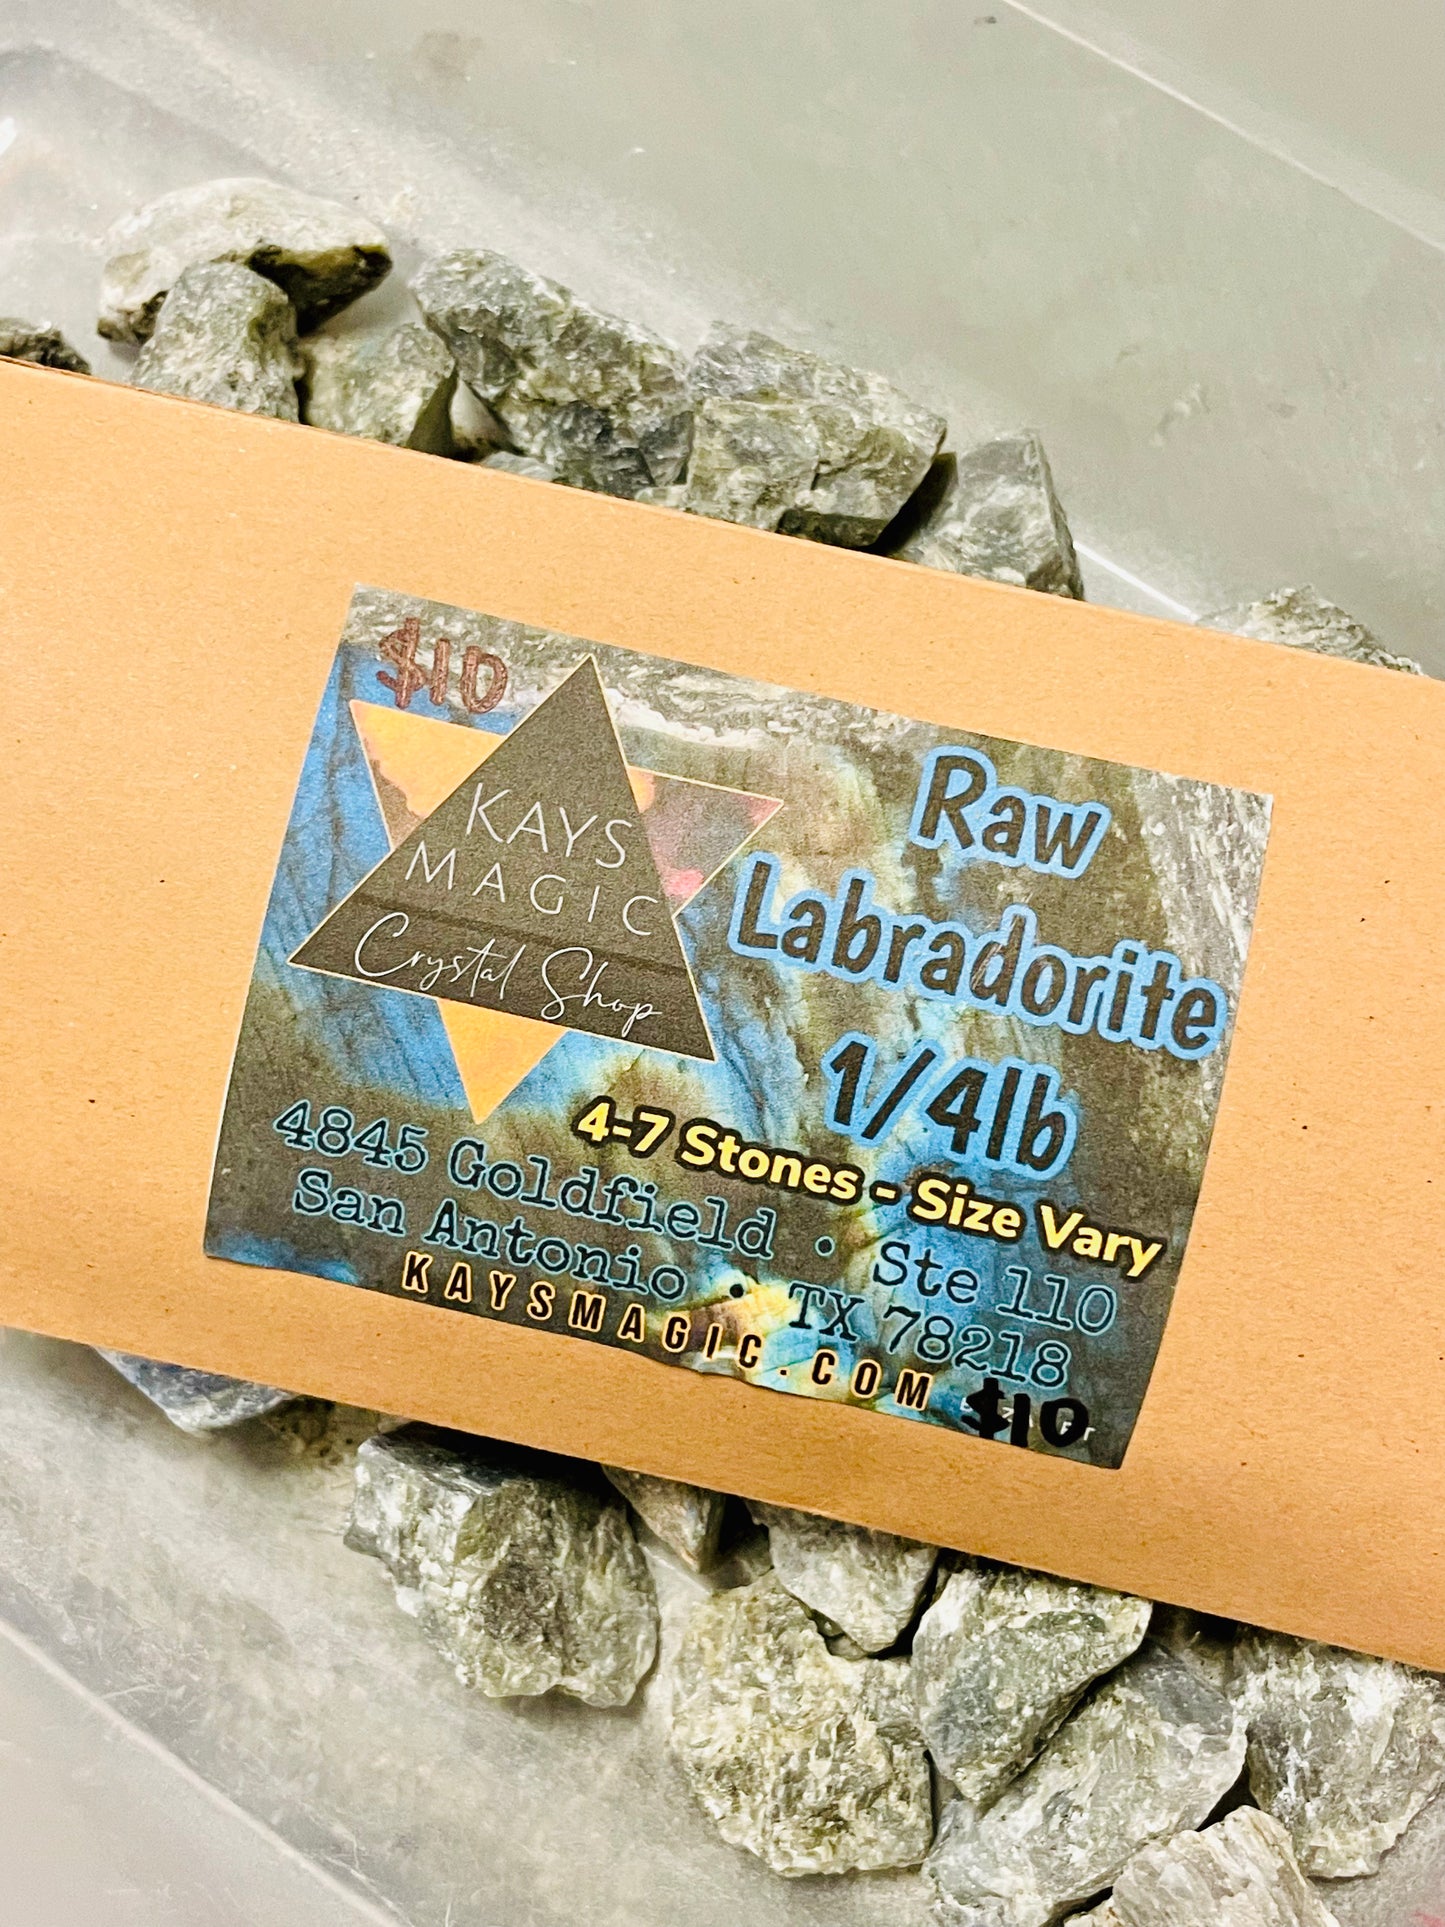 Labradorite, Raw, 1/4 lb Bulk